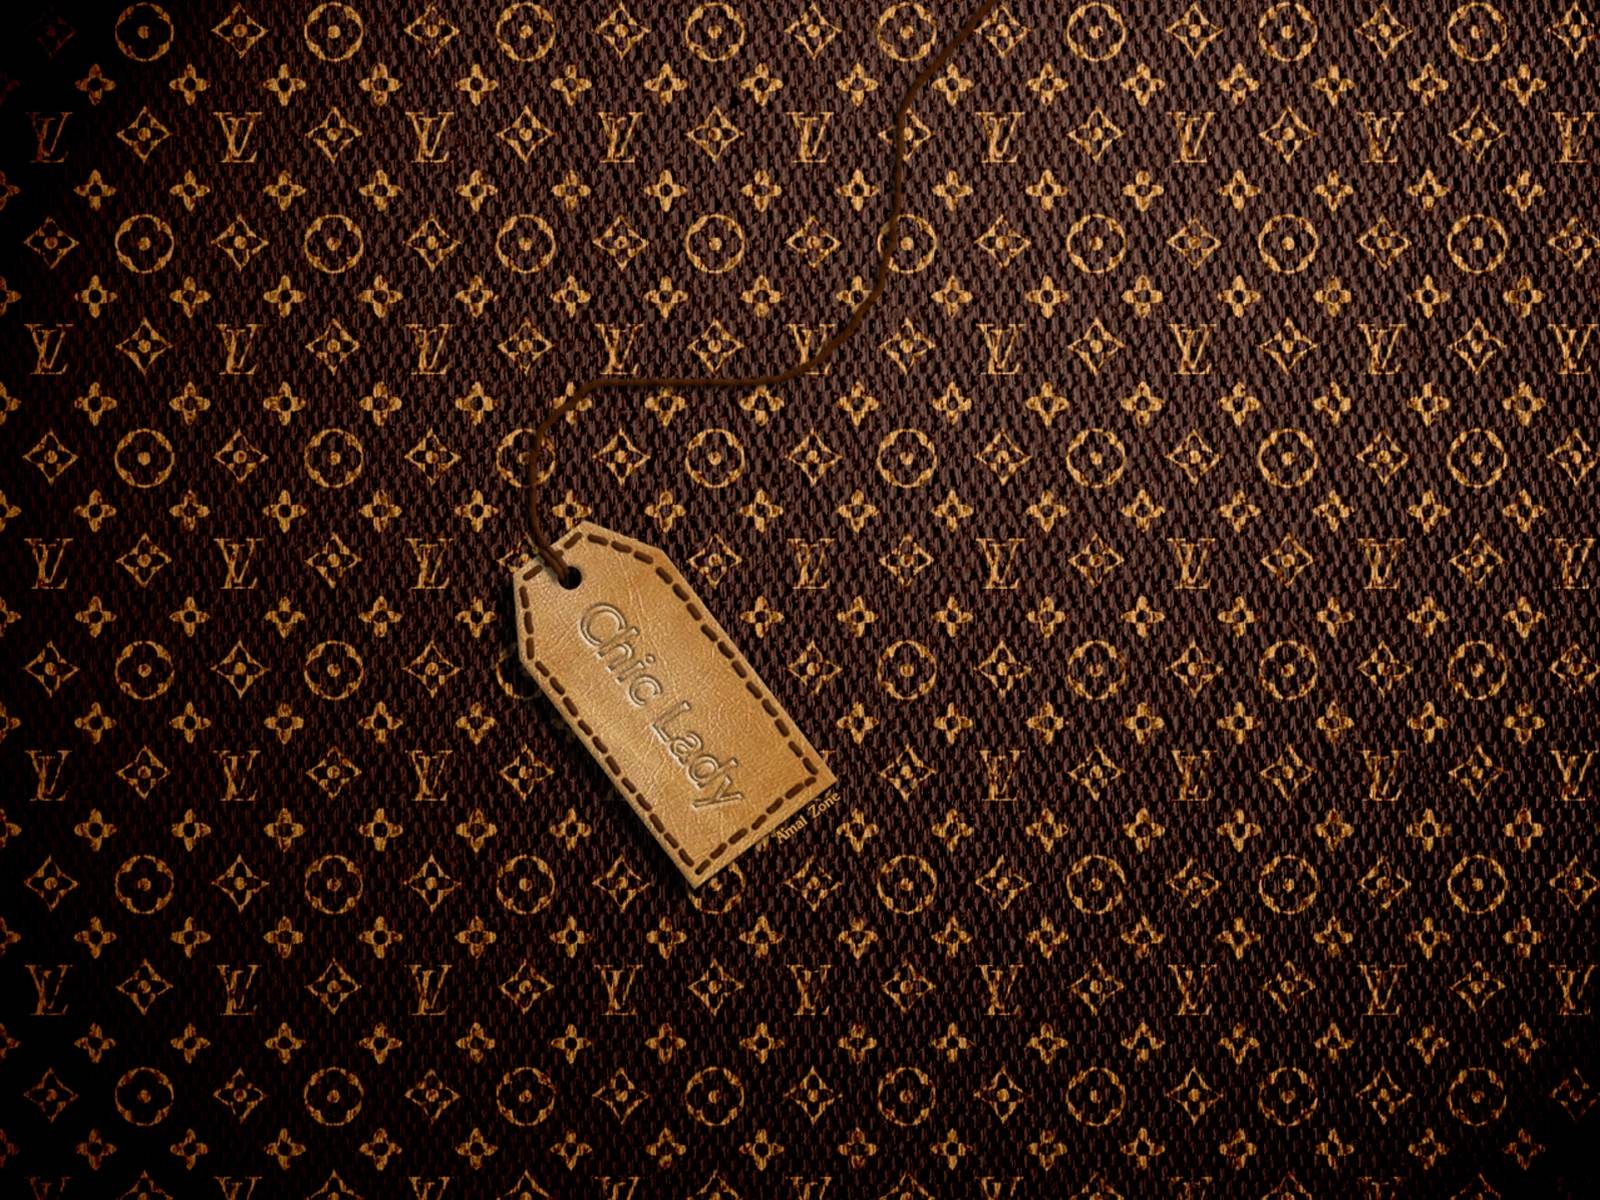 Louis Vuitton wallpaper  Louis vuitton iphone wallpaper, Iphone